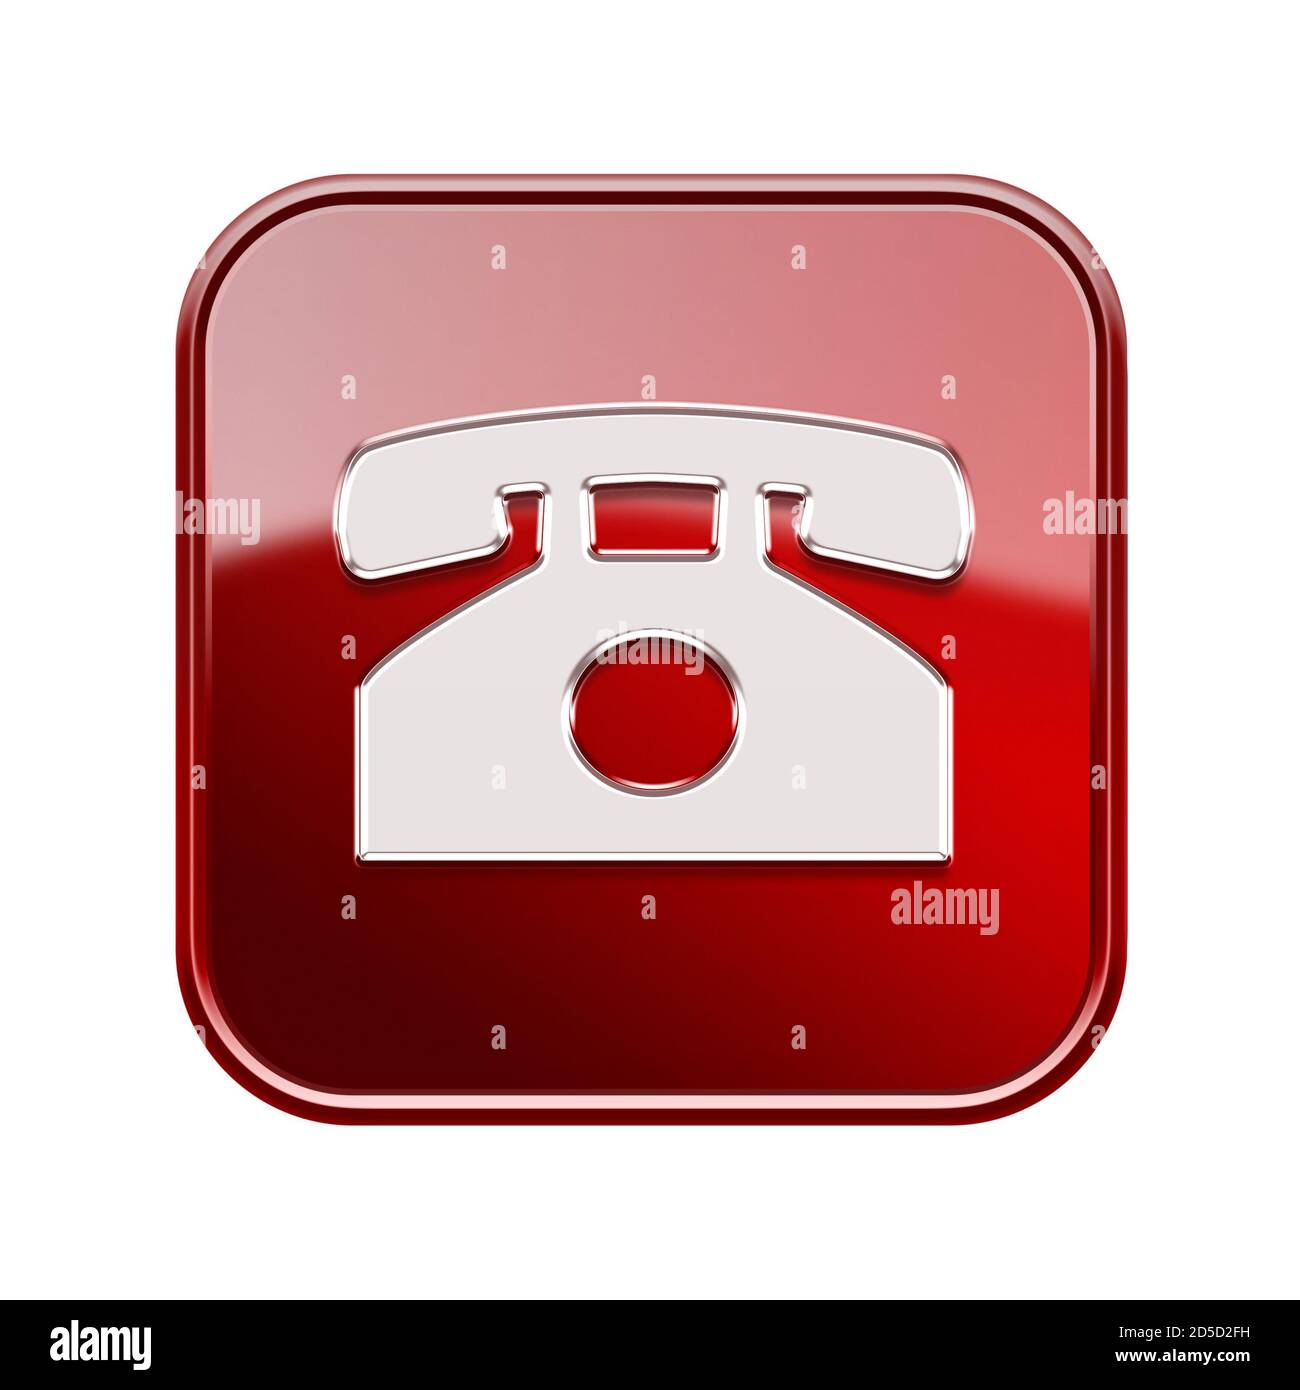 L'icône de téléphone rouge brillant, isolé sur fond blanc Banque D'Images